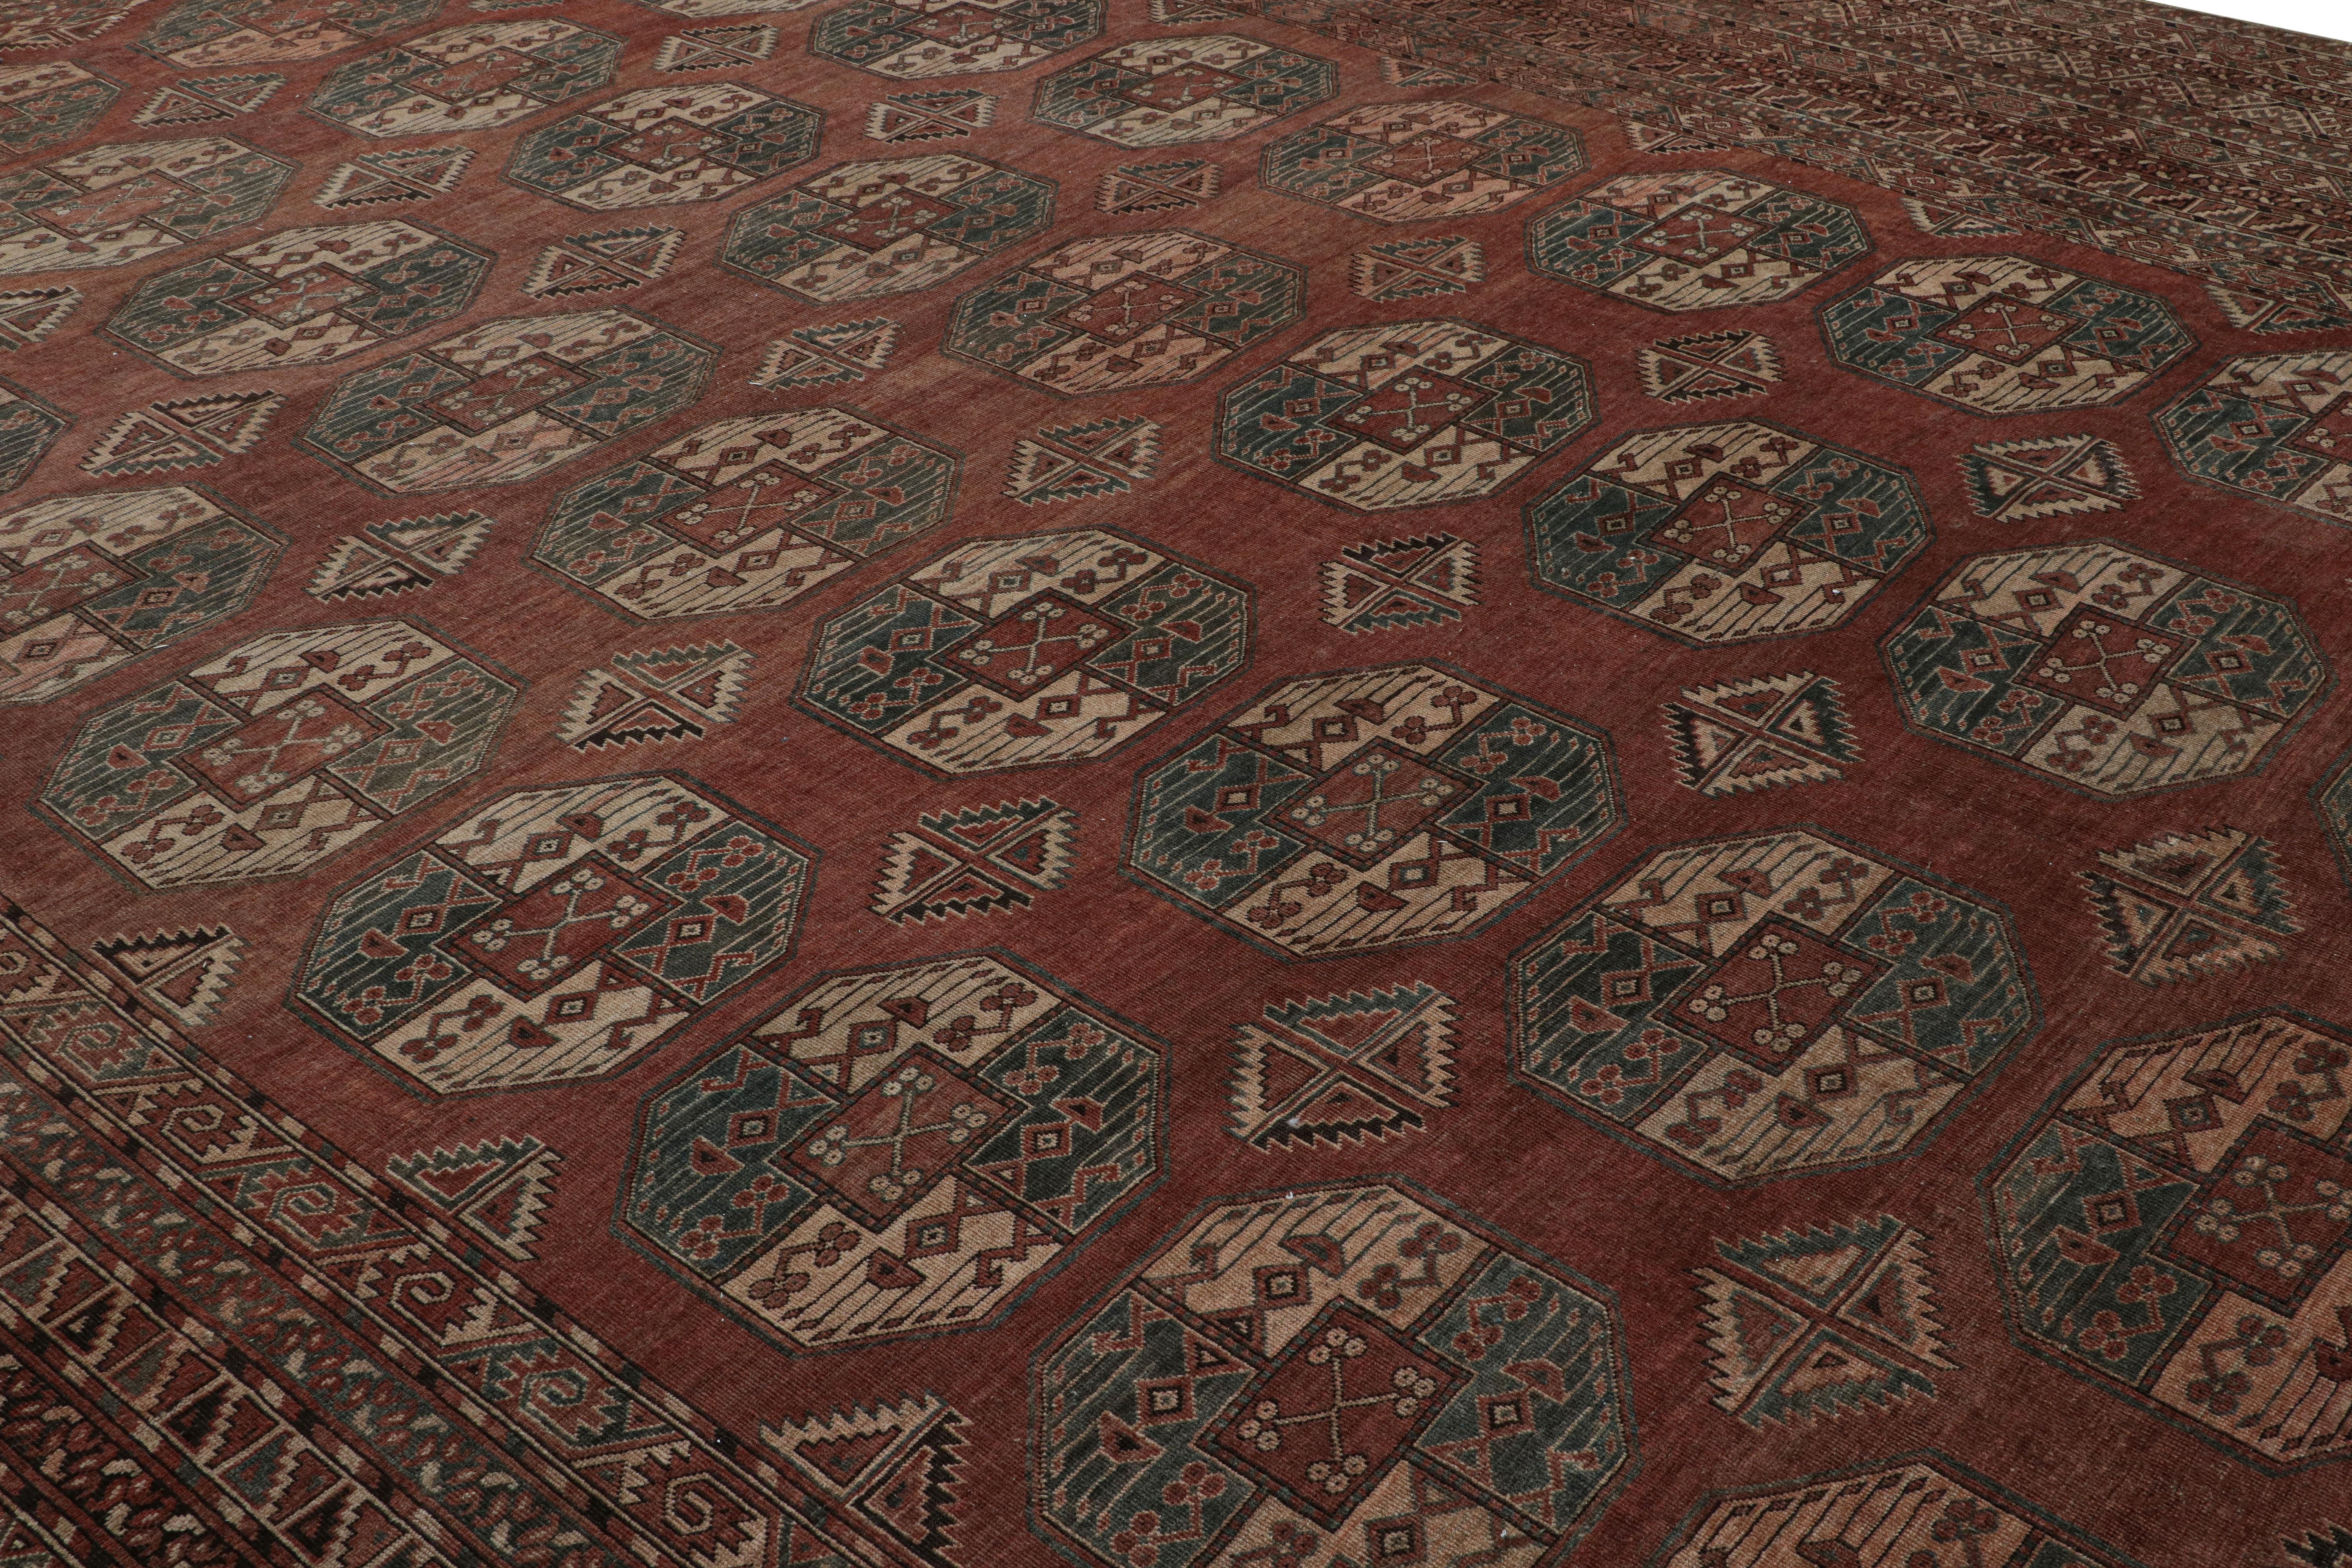 Ce tapis vintage 15x19 est une rare curation surdimensionnée dont on pense qu'elle provient de Bokhara. Il a été noué à la main en laine vers 1940-1960. 

Sur le Design : 

Les tons rouille et rouge brique soulignent un jeu de médaillons et de